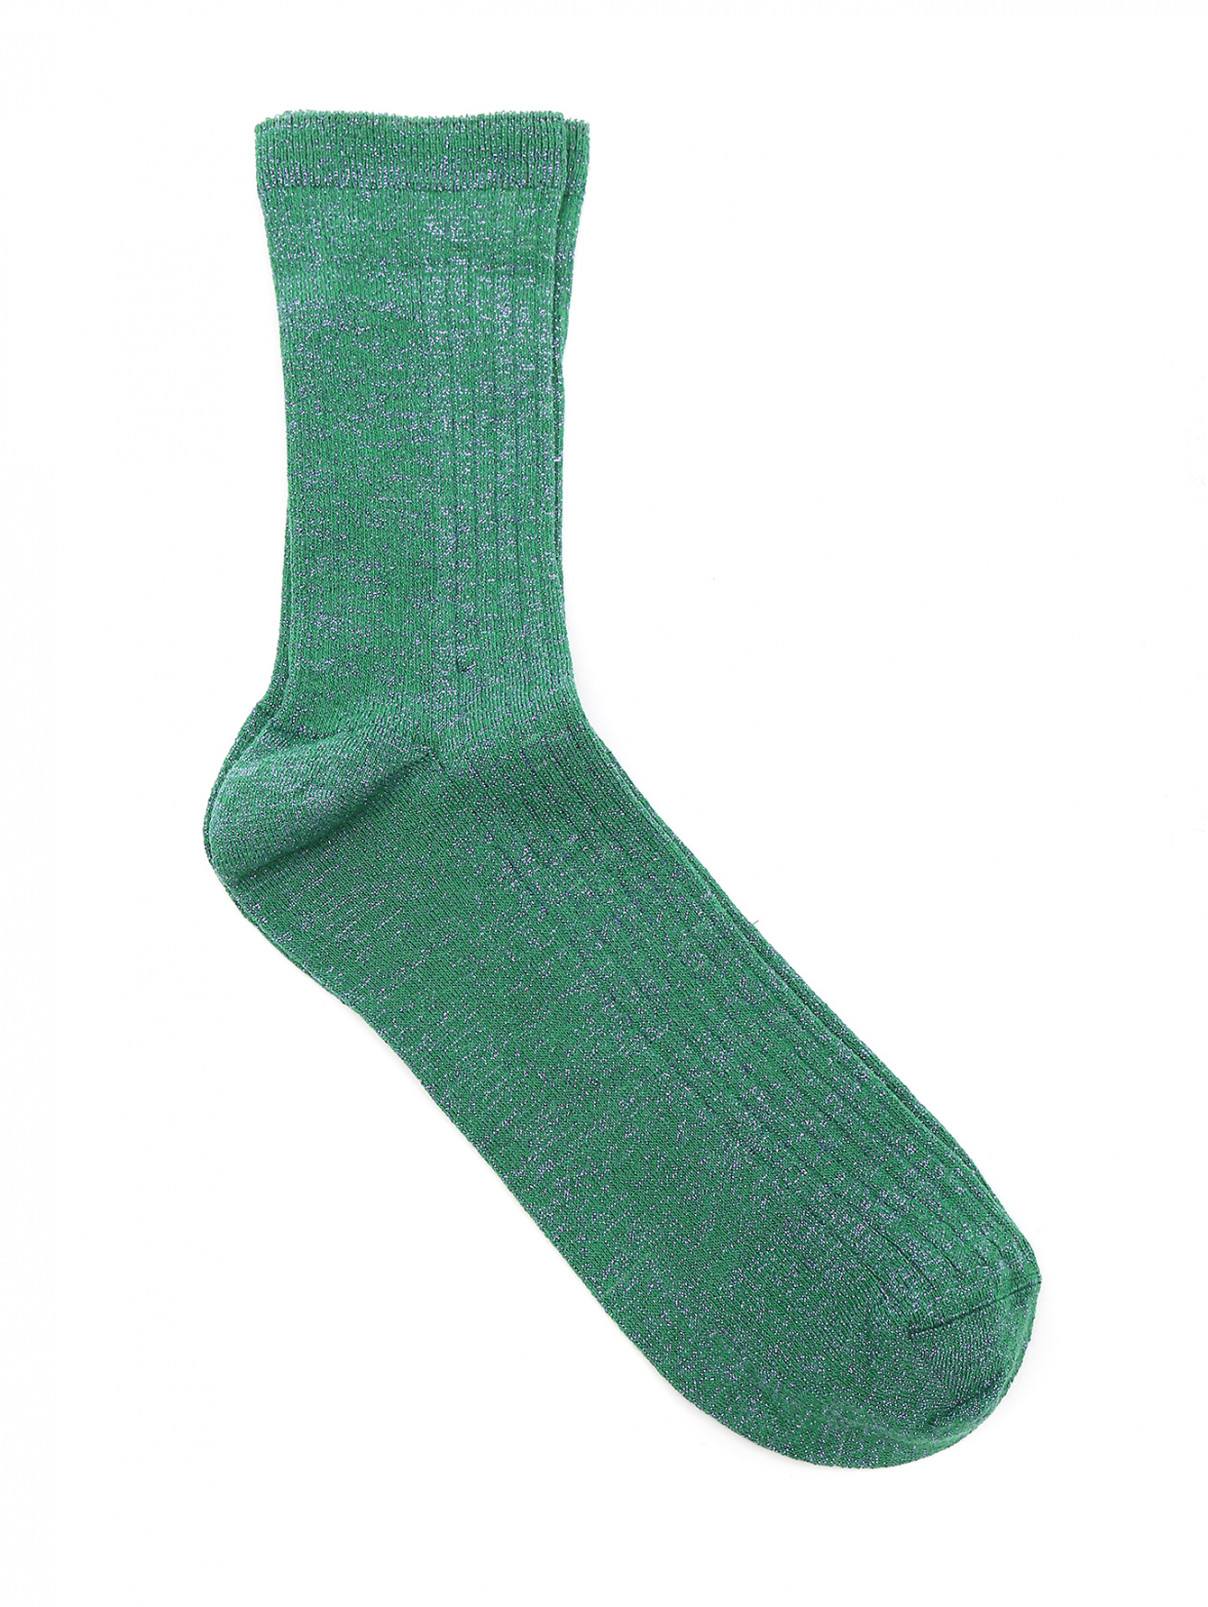 Носки из хлопка ALTO MILANO  –  Общий вид  – Цвет:  Зеленый